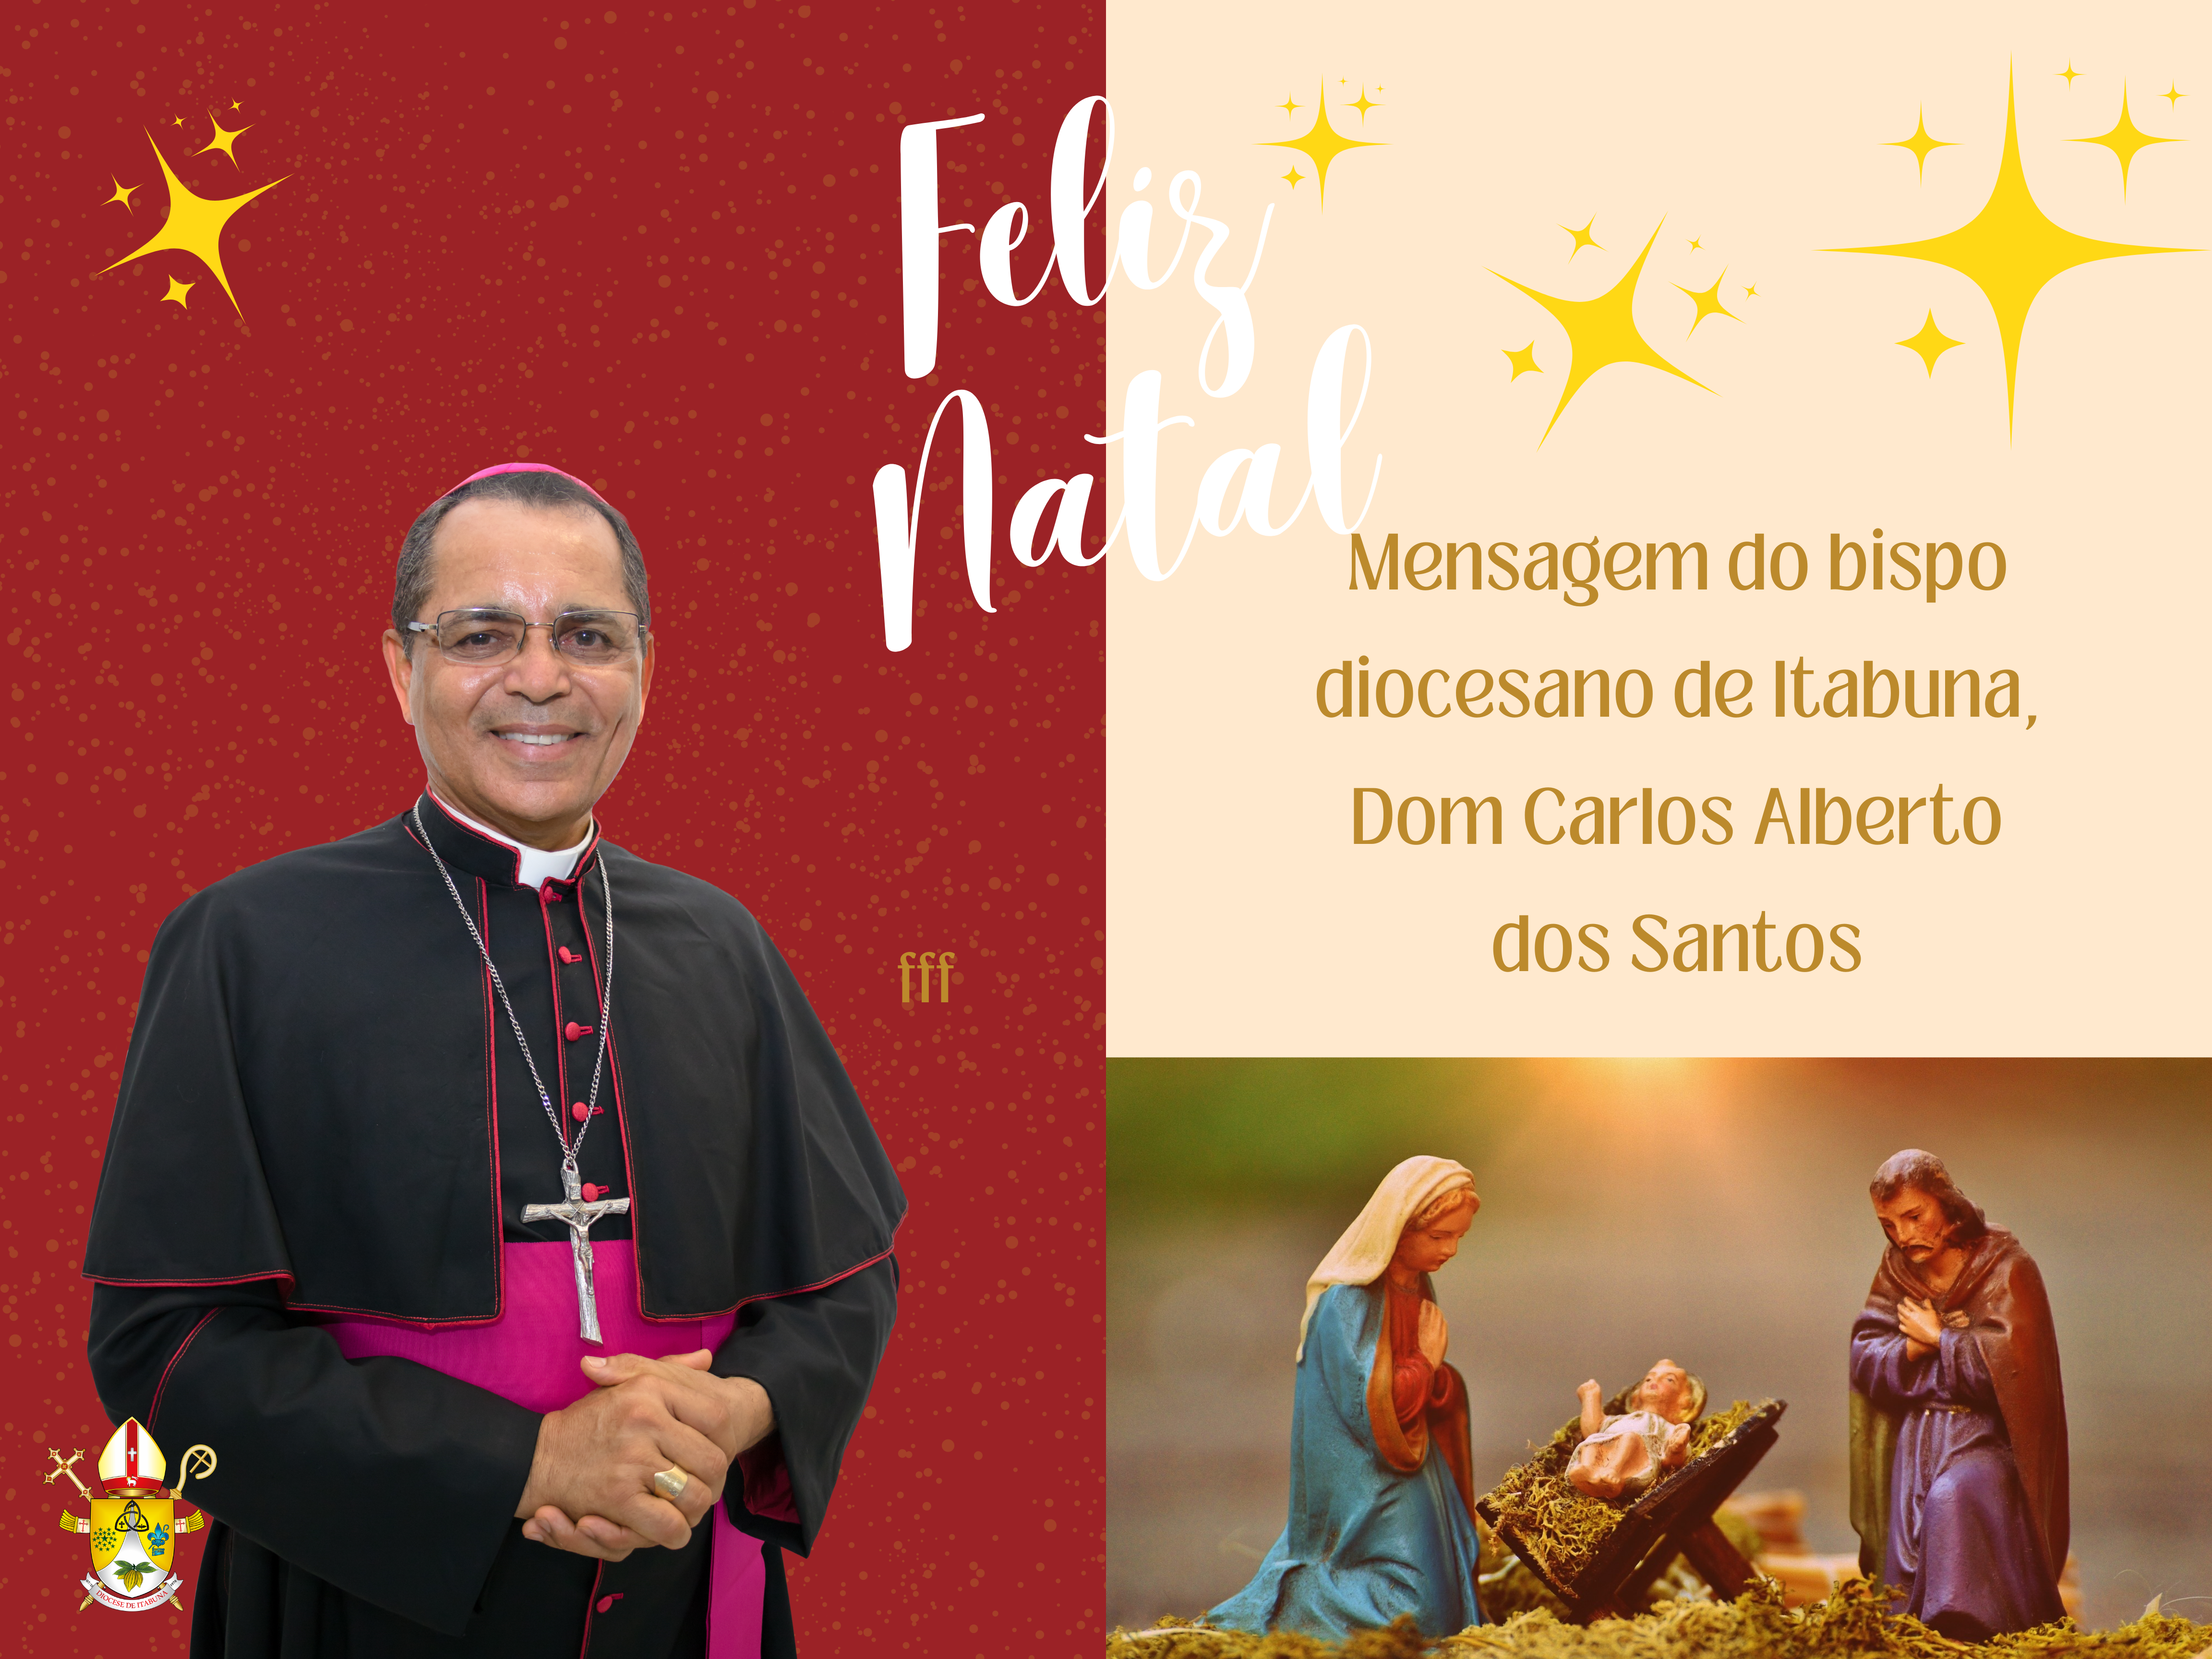 ITABUNA – Mensagem de Natal do bispo diocesano Dom Carlos Alberto dos Santos